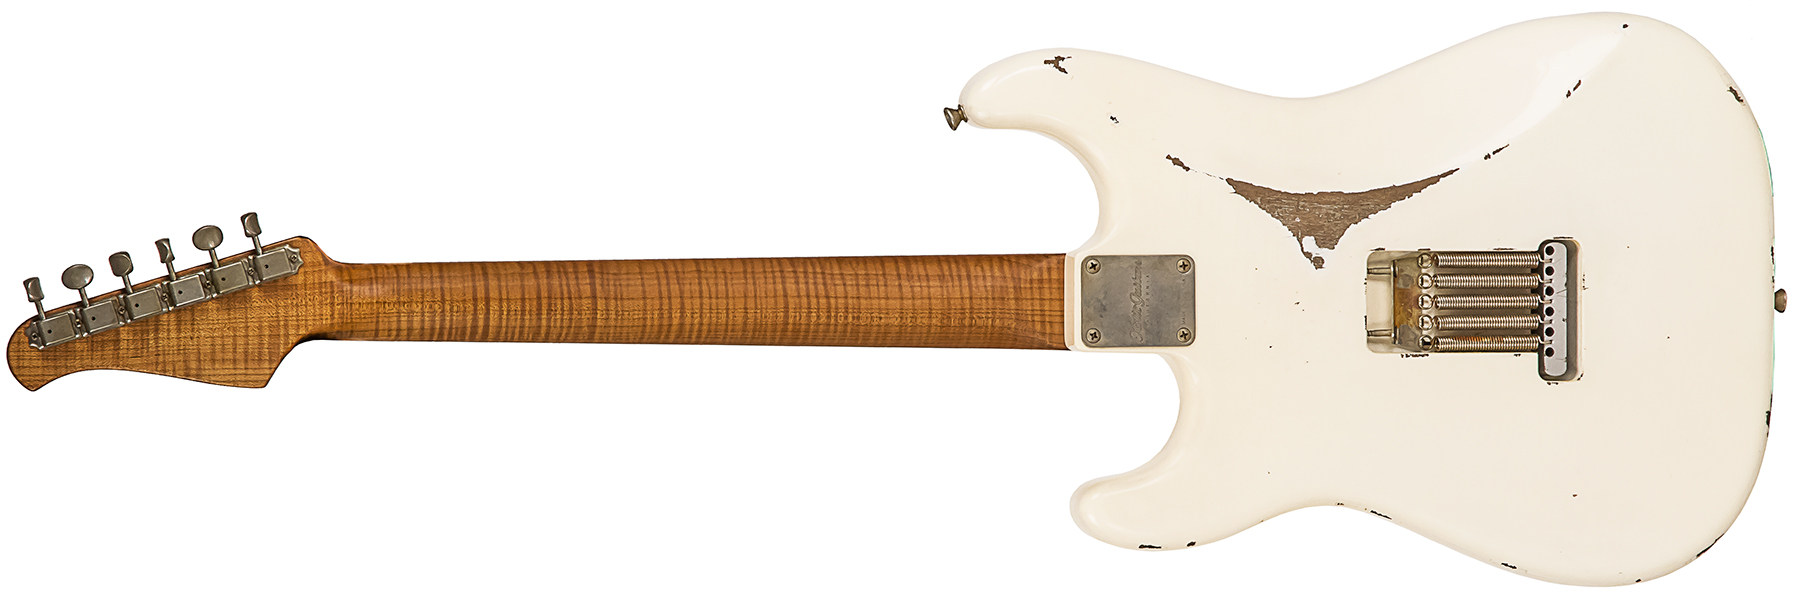 Xotic Xsc-1 Alder California Class 3s Rw #1624r - Heavy Aging Vintage White - Elektrische gitaar in Str-vorm - Variation 1